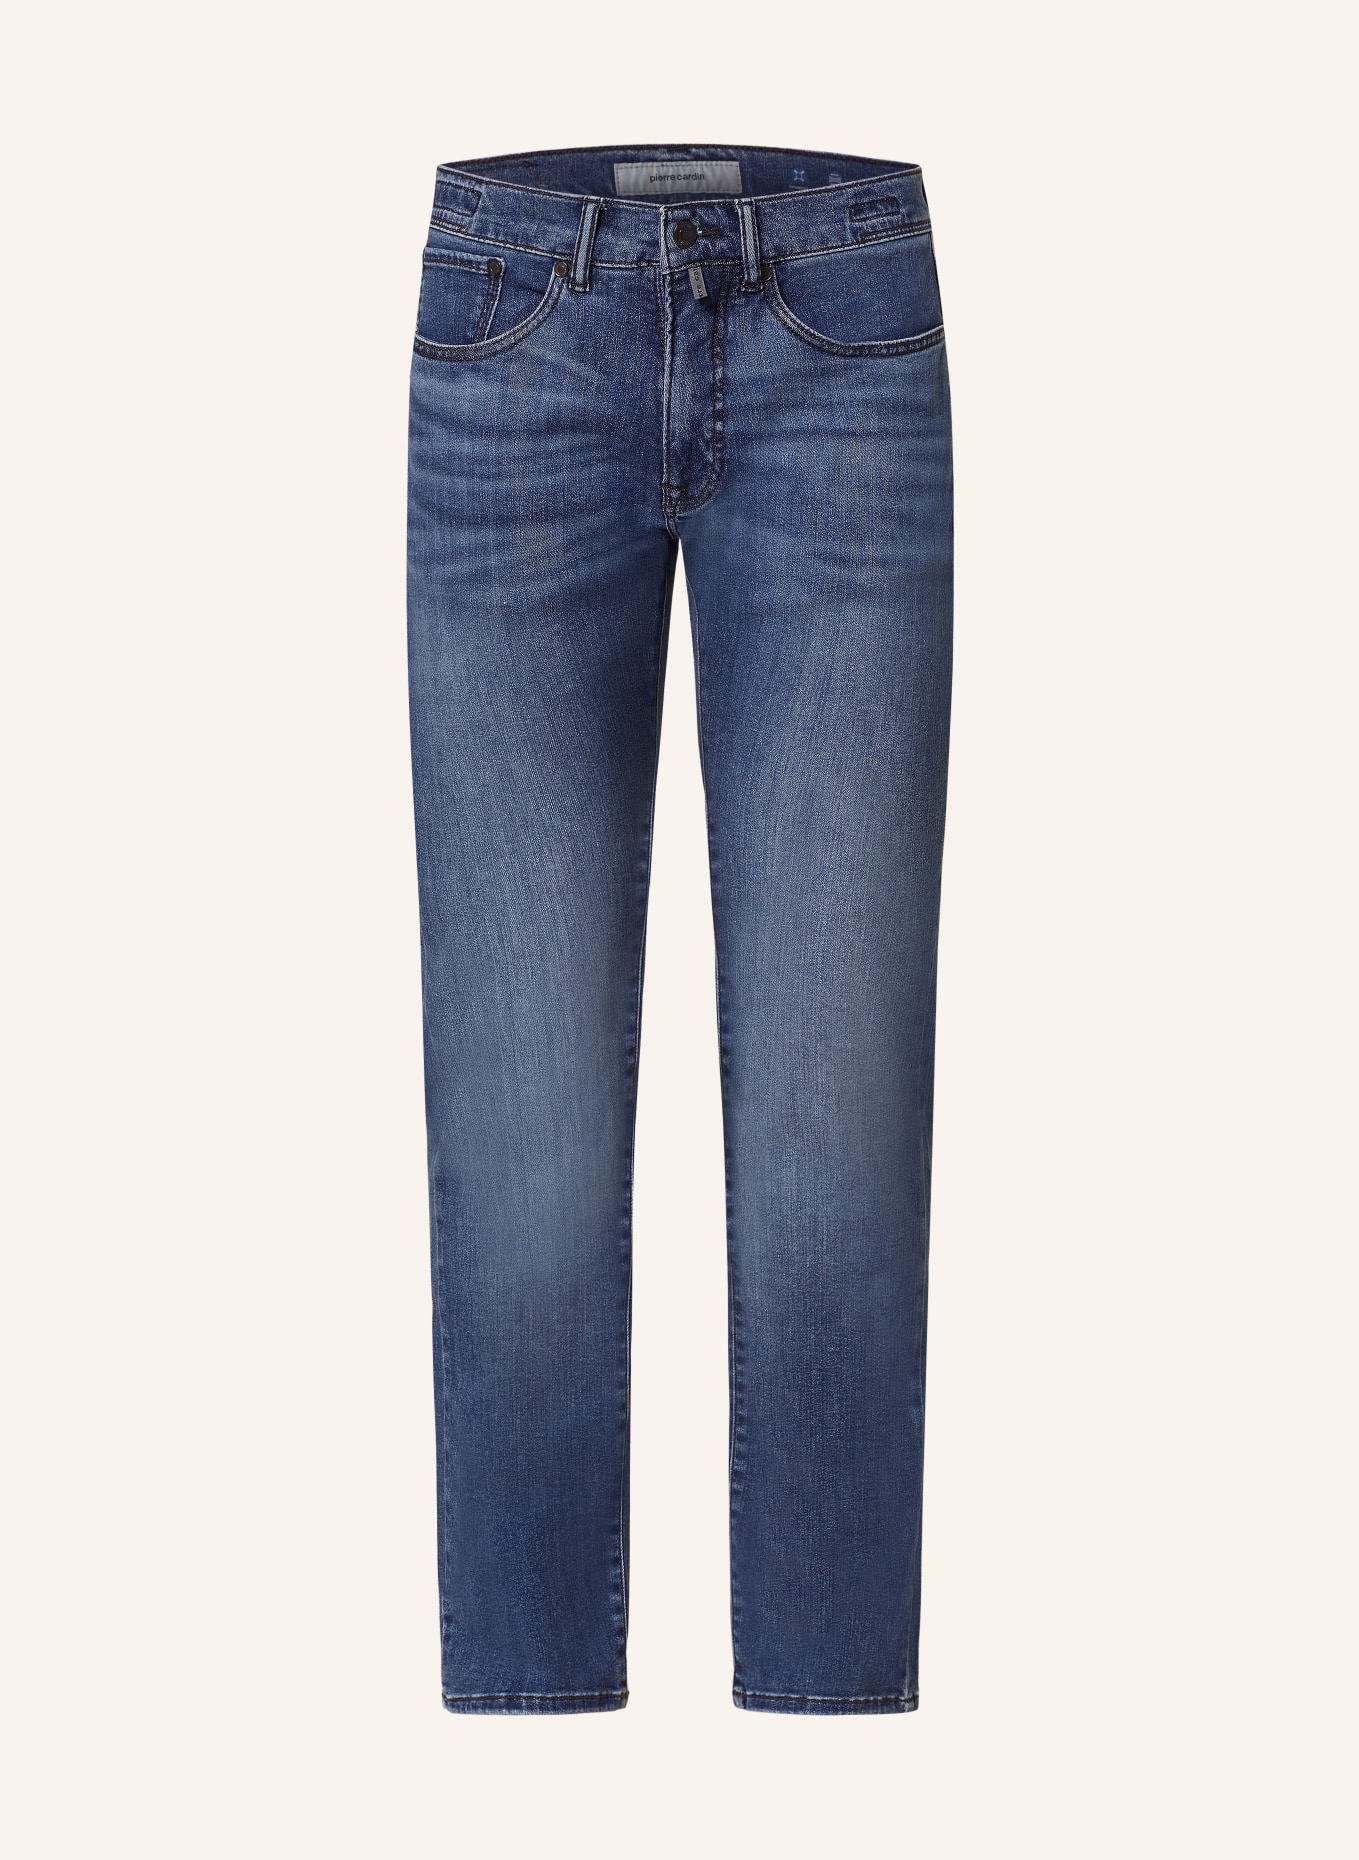 pierre cardin Jeans ANTIBES Slim Fit, Barva: 6835 ocean blue used whisker (Obrázek 1)